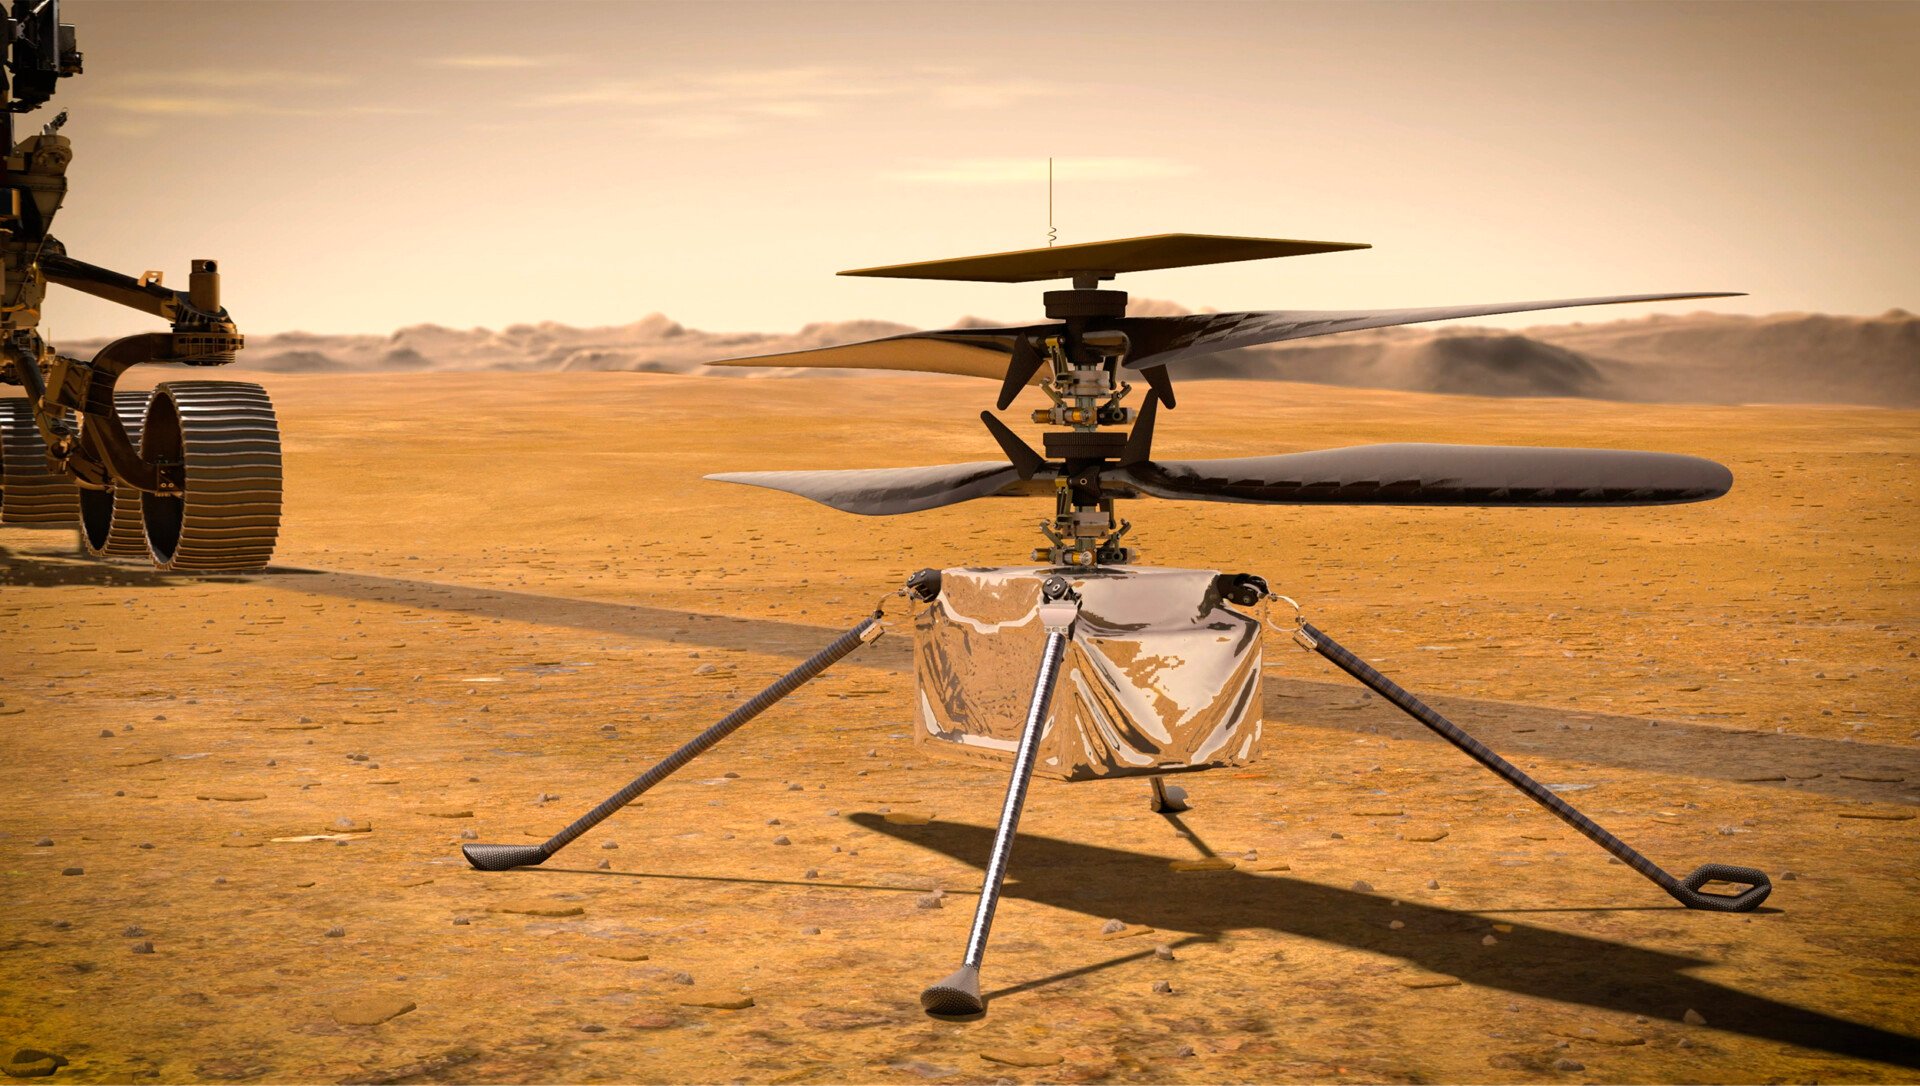 Δείτε την πρώτη πτήση του drone στον Άρη μετά την αναβάθμιση των συστημάτων του (βίντεο) - naftemporiki.gr